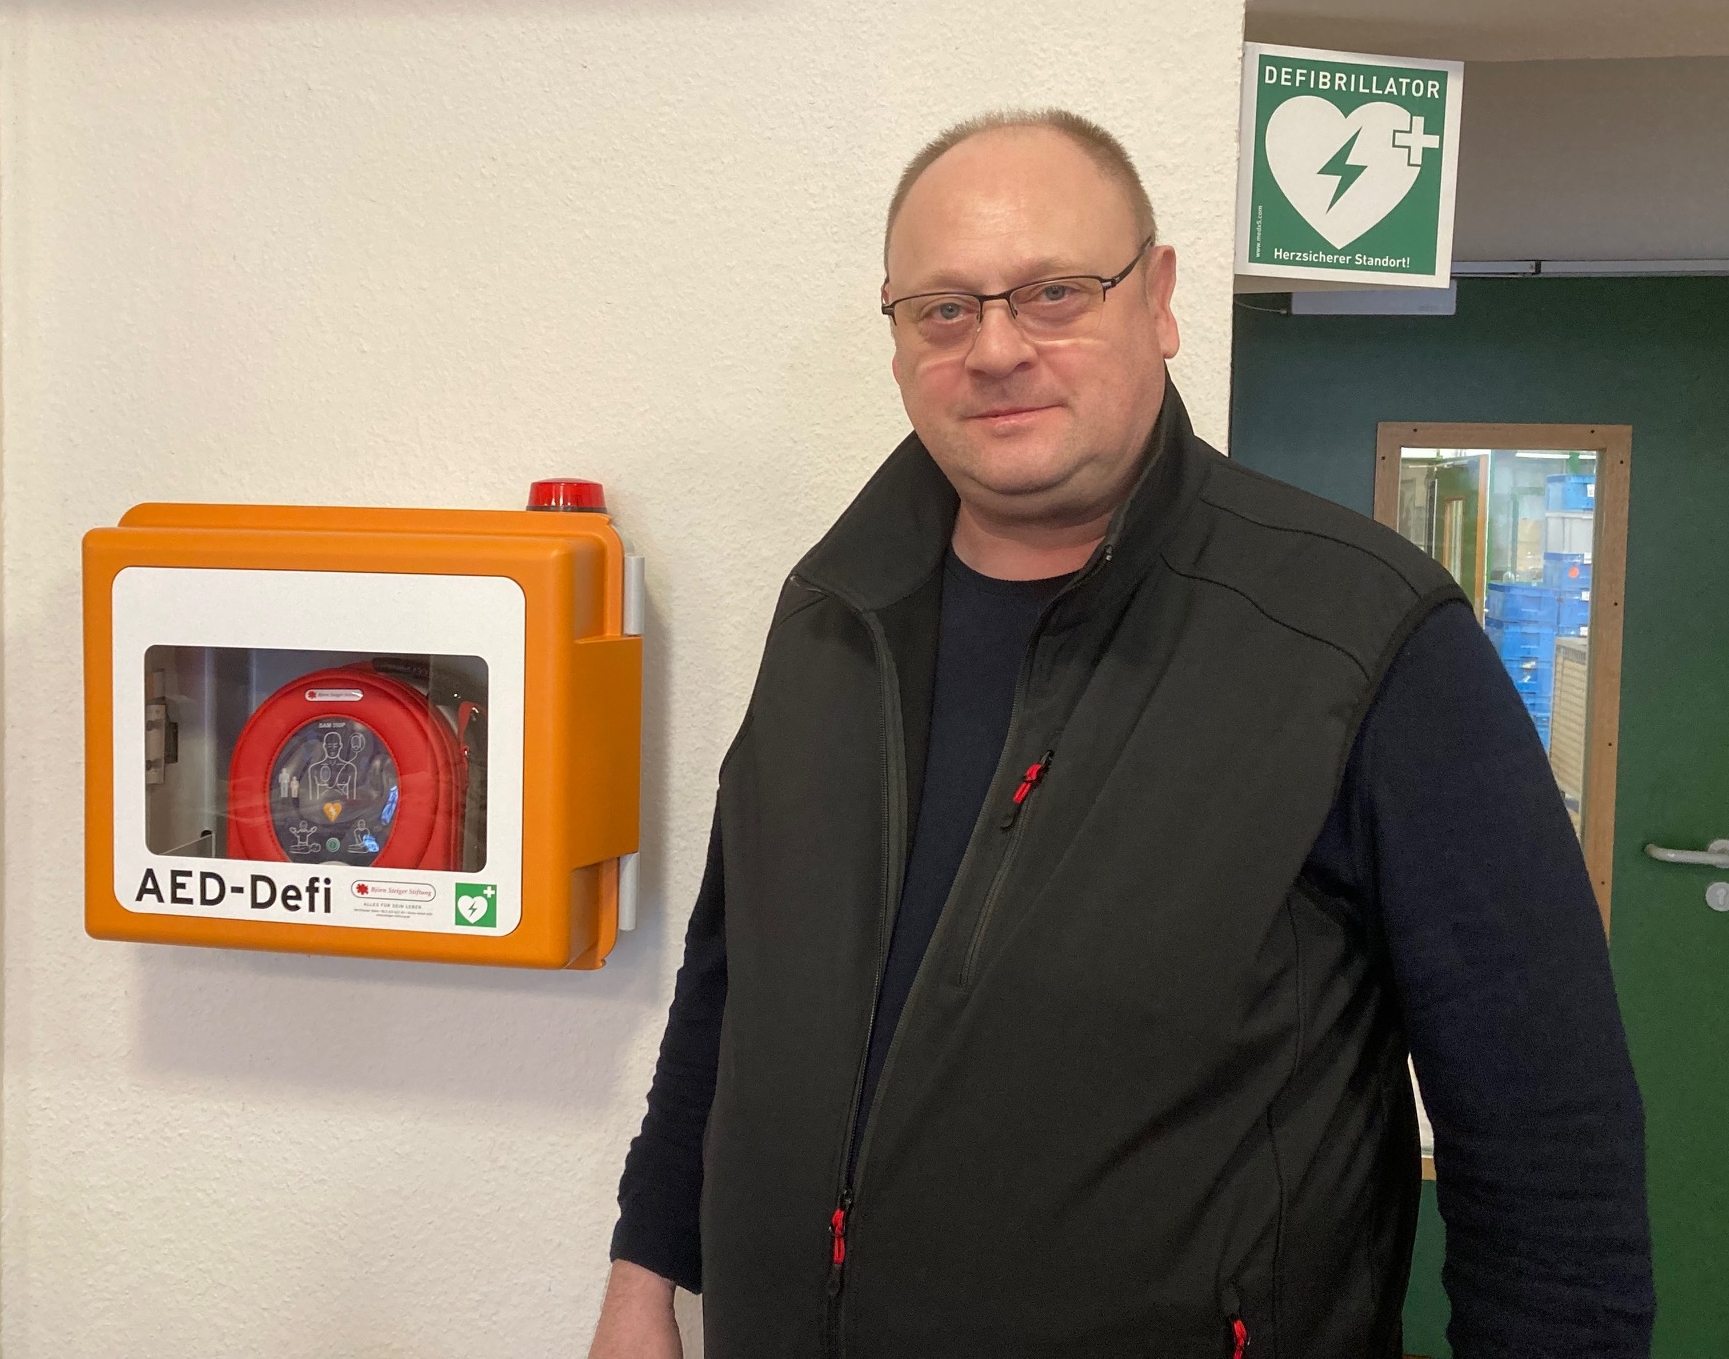 Alle Standorte mit Defibrillatoren ausgestattet